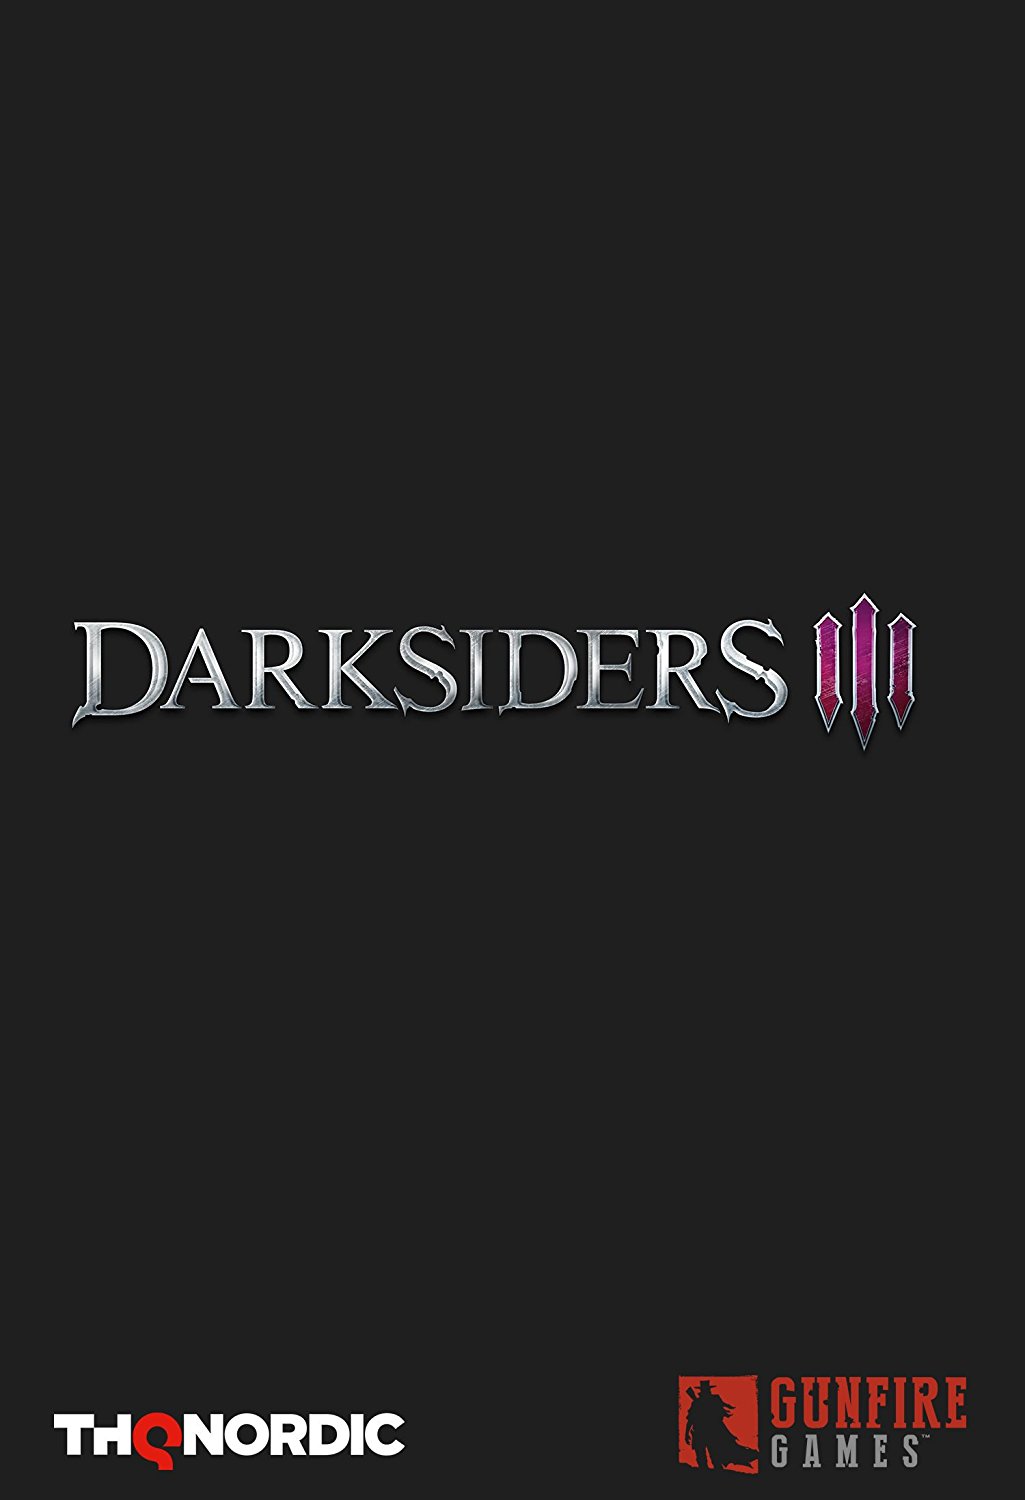 Darksiders 3 Leaked Via Amazon